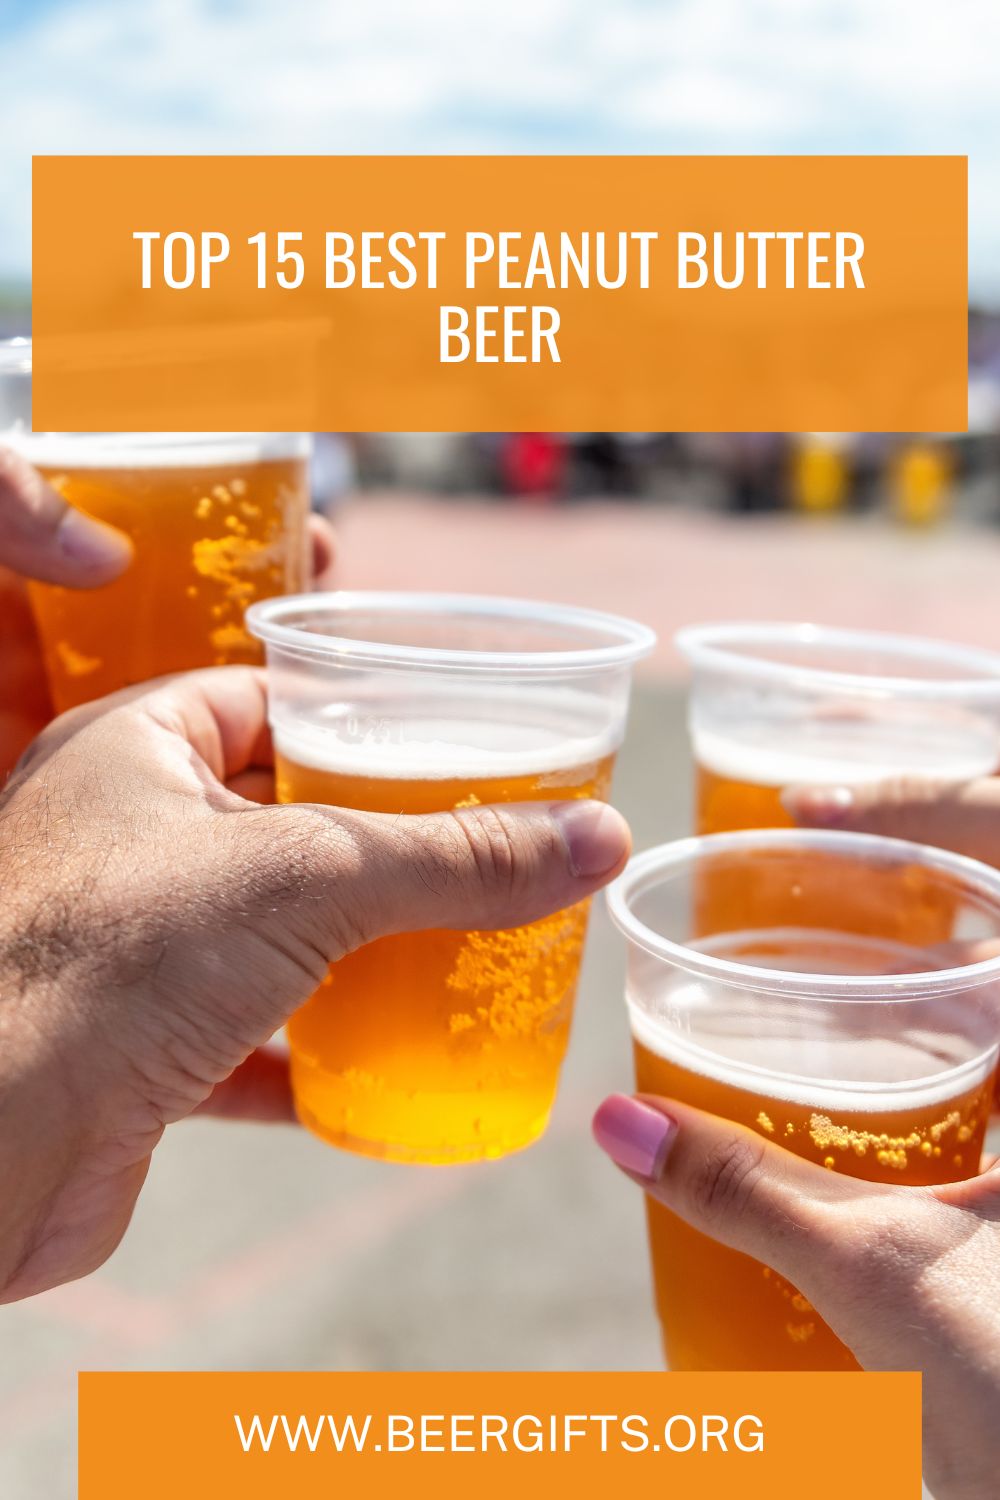 Top 15 Best Peanut Butter Beer18